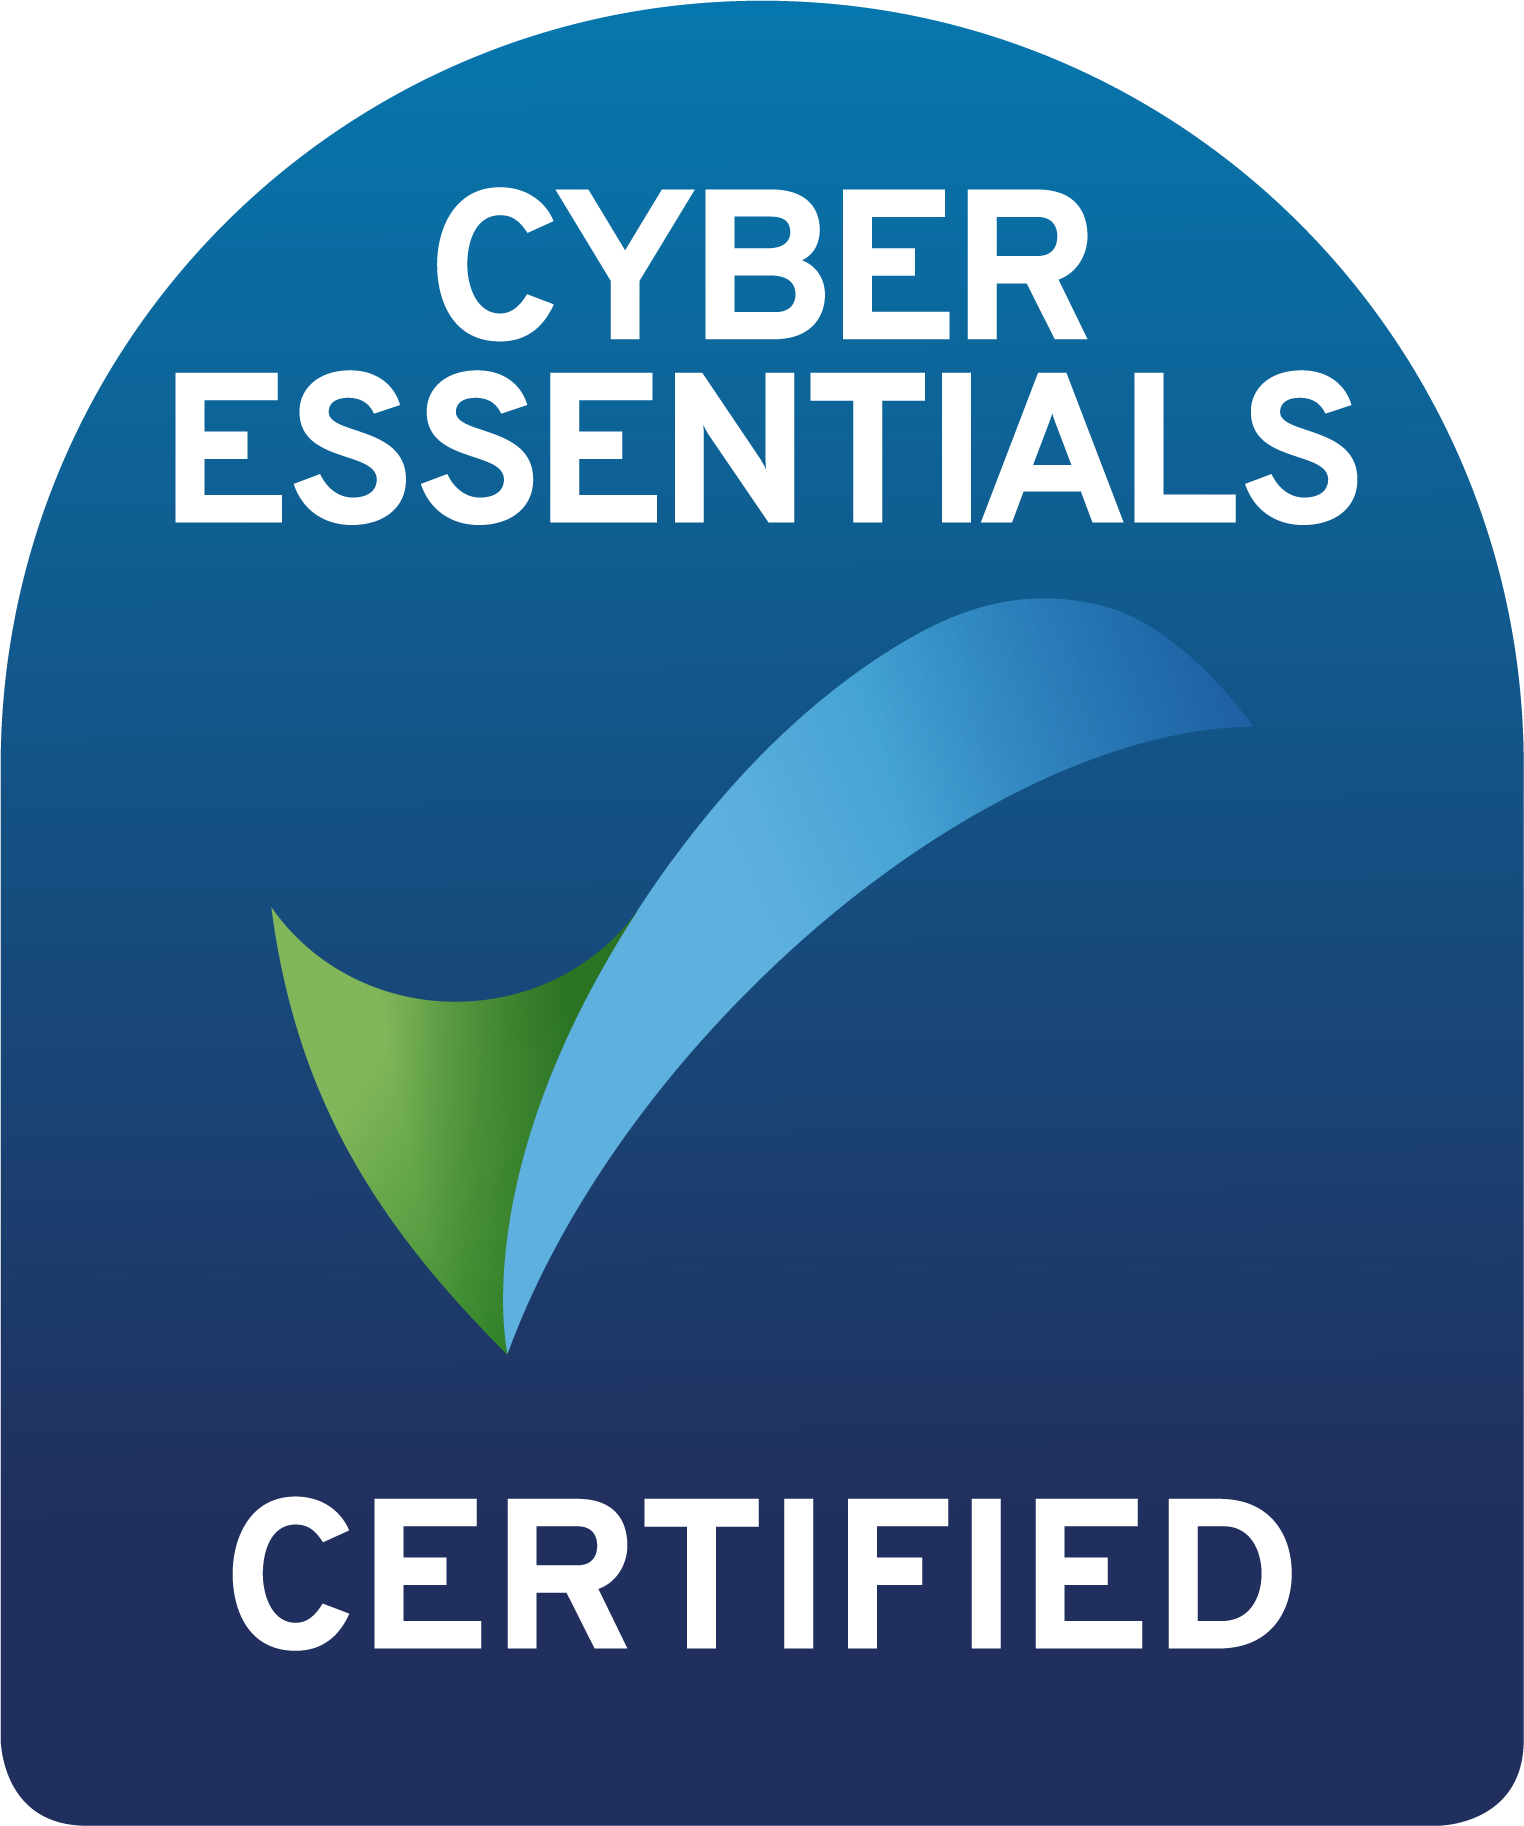 Cyber Essentials Certiciation Mark